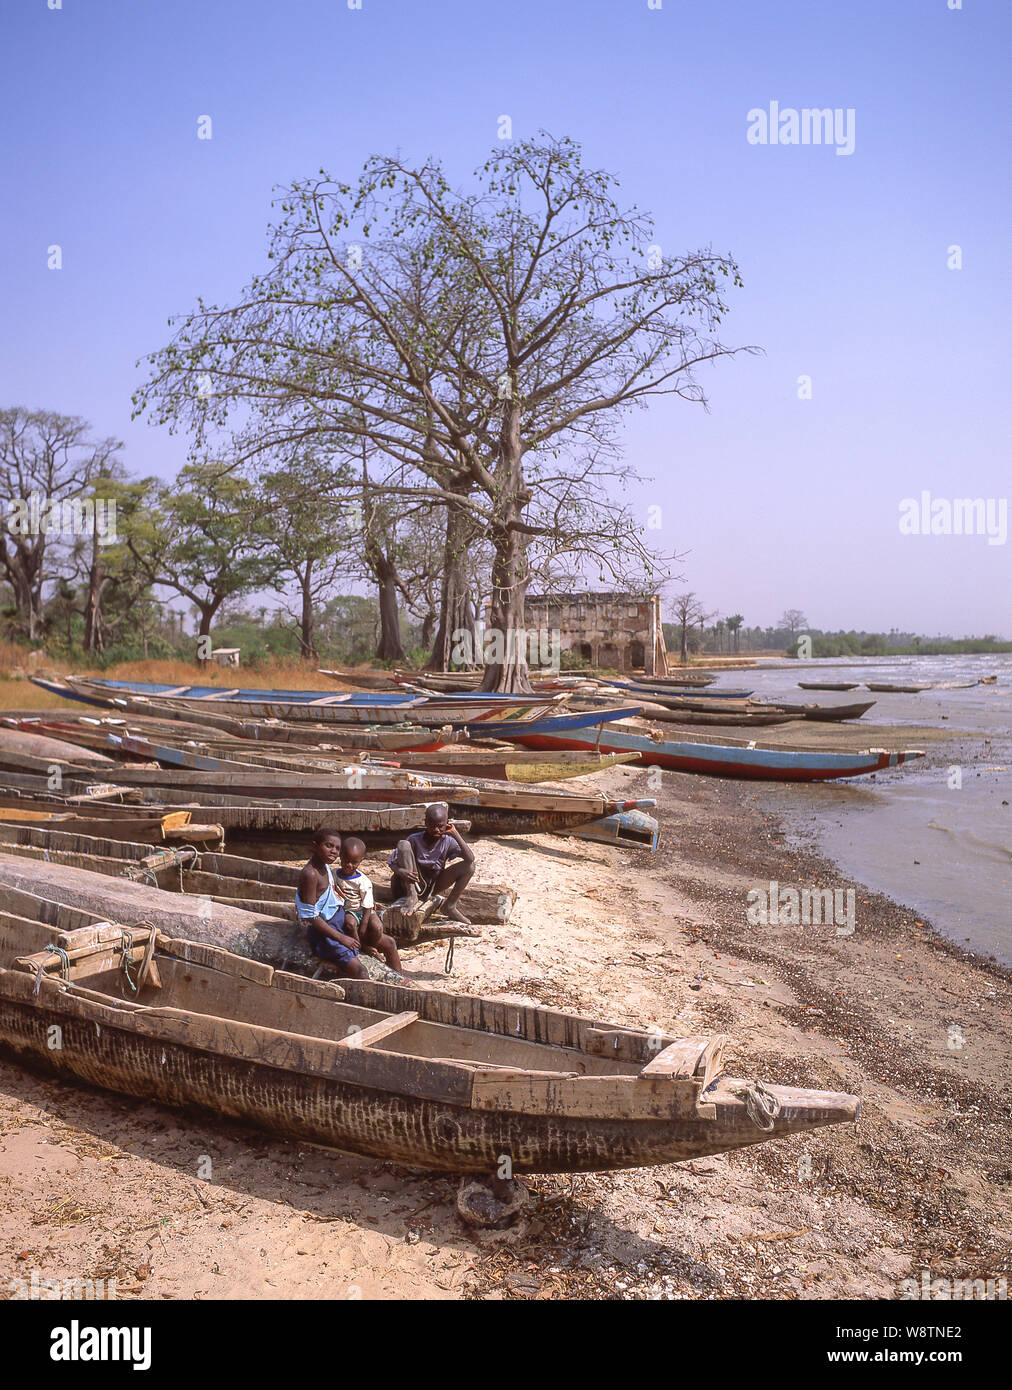 Des bateaux de pêche sur le fleuve Gambie, Kunta Kinteh Island (l'île James) trading station, North Bank Division, République de Gambie Banque D'Images